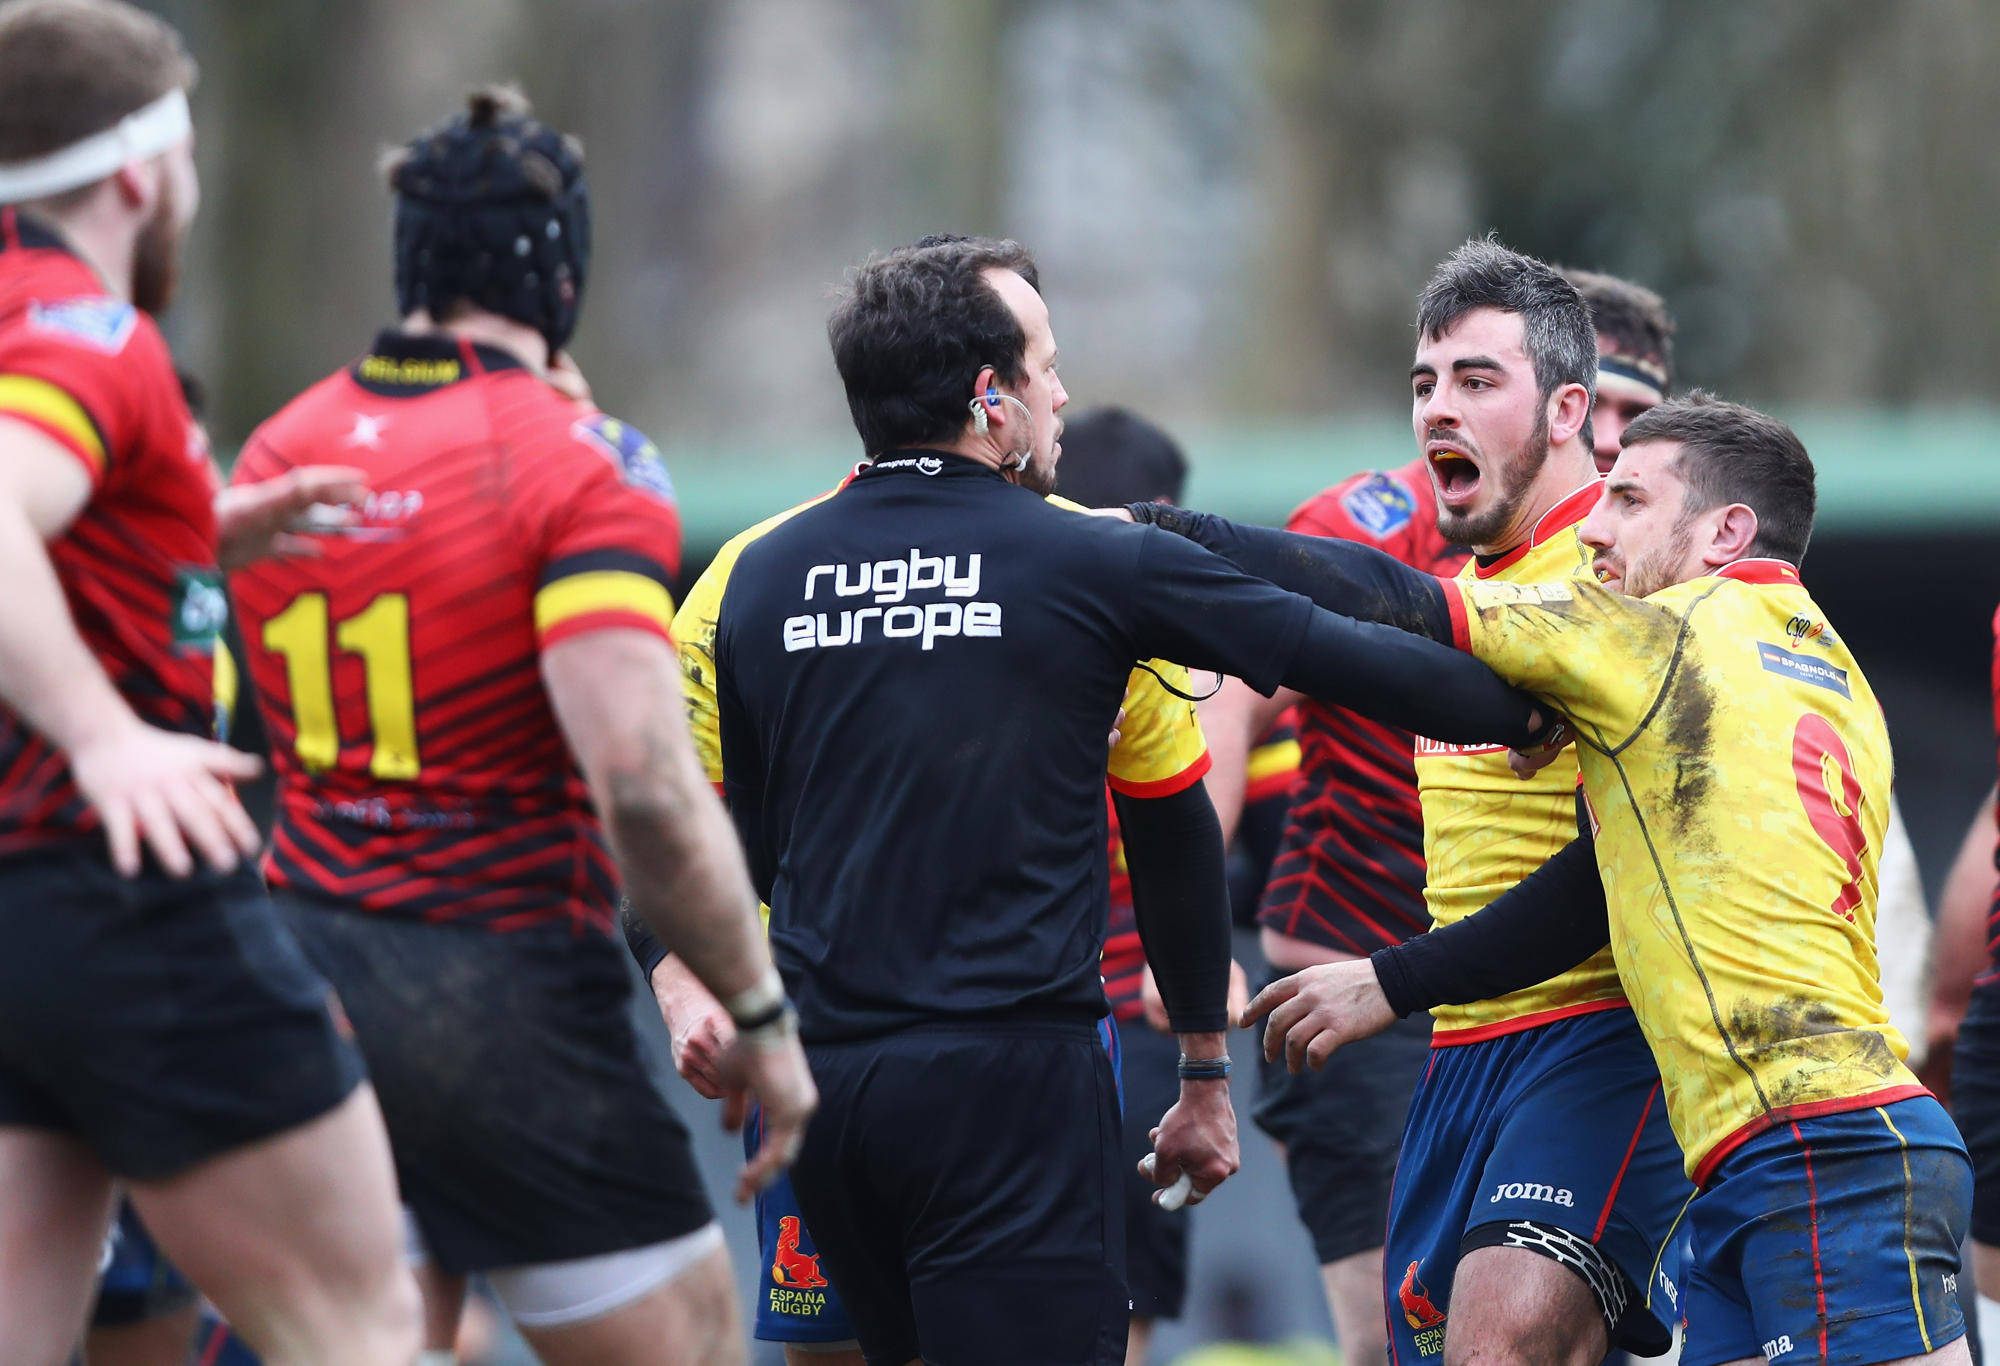 Spain Belgium Rugby Union